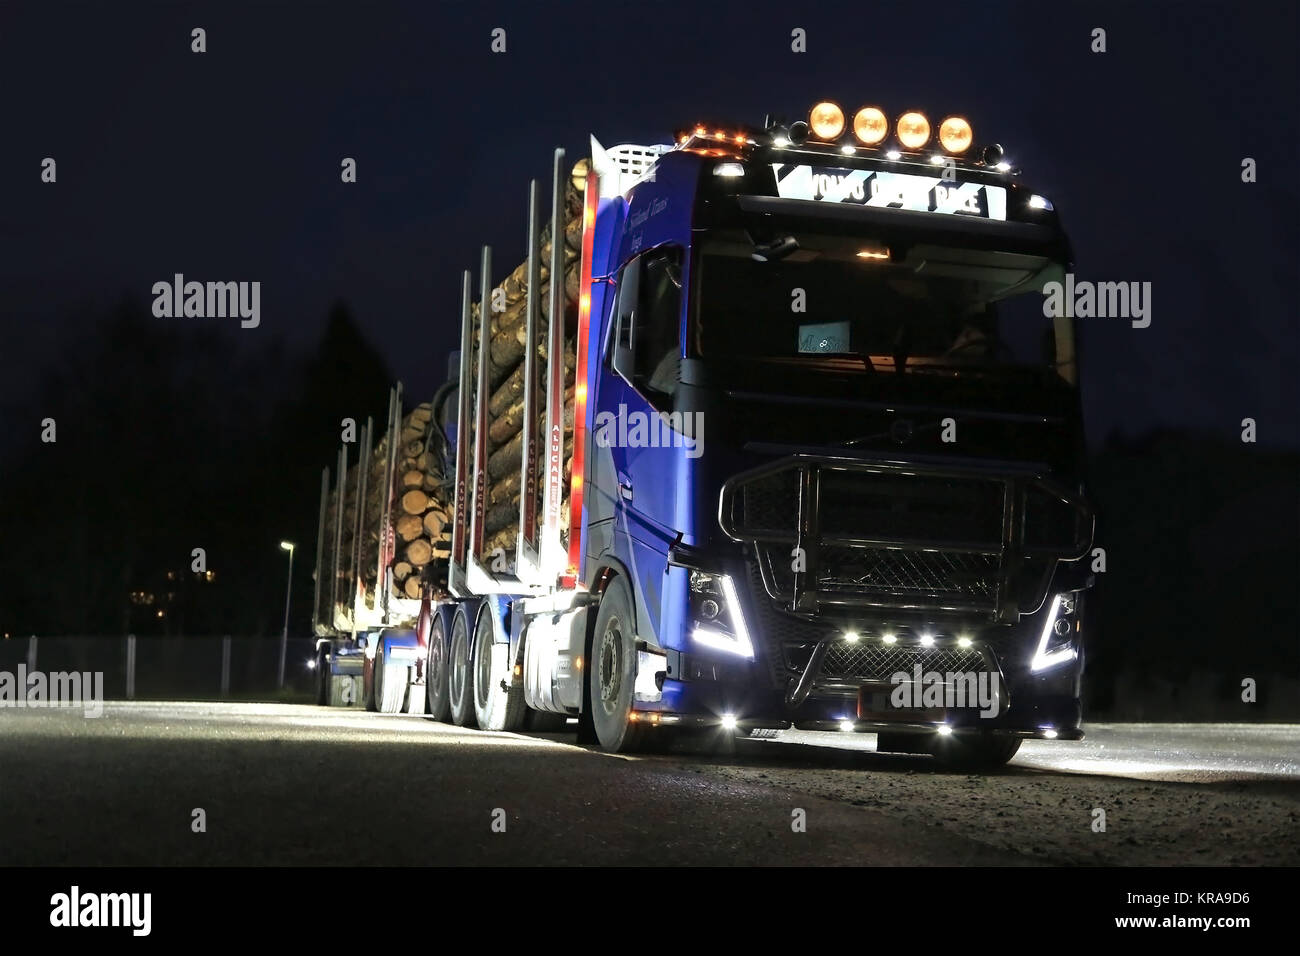 SALO, Finlandia - 15 novembre 2014: Volvo FH16 carrello di registrazione con i fari anteriori e le luci di lavoro accese nel buio. In Utsjoki, Finlandia la notte polare begi Foto Stock